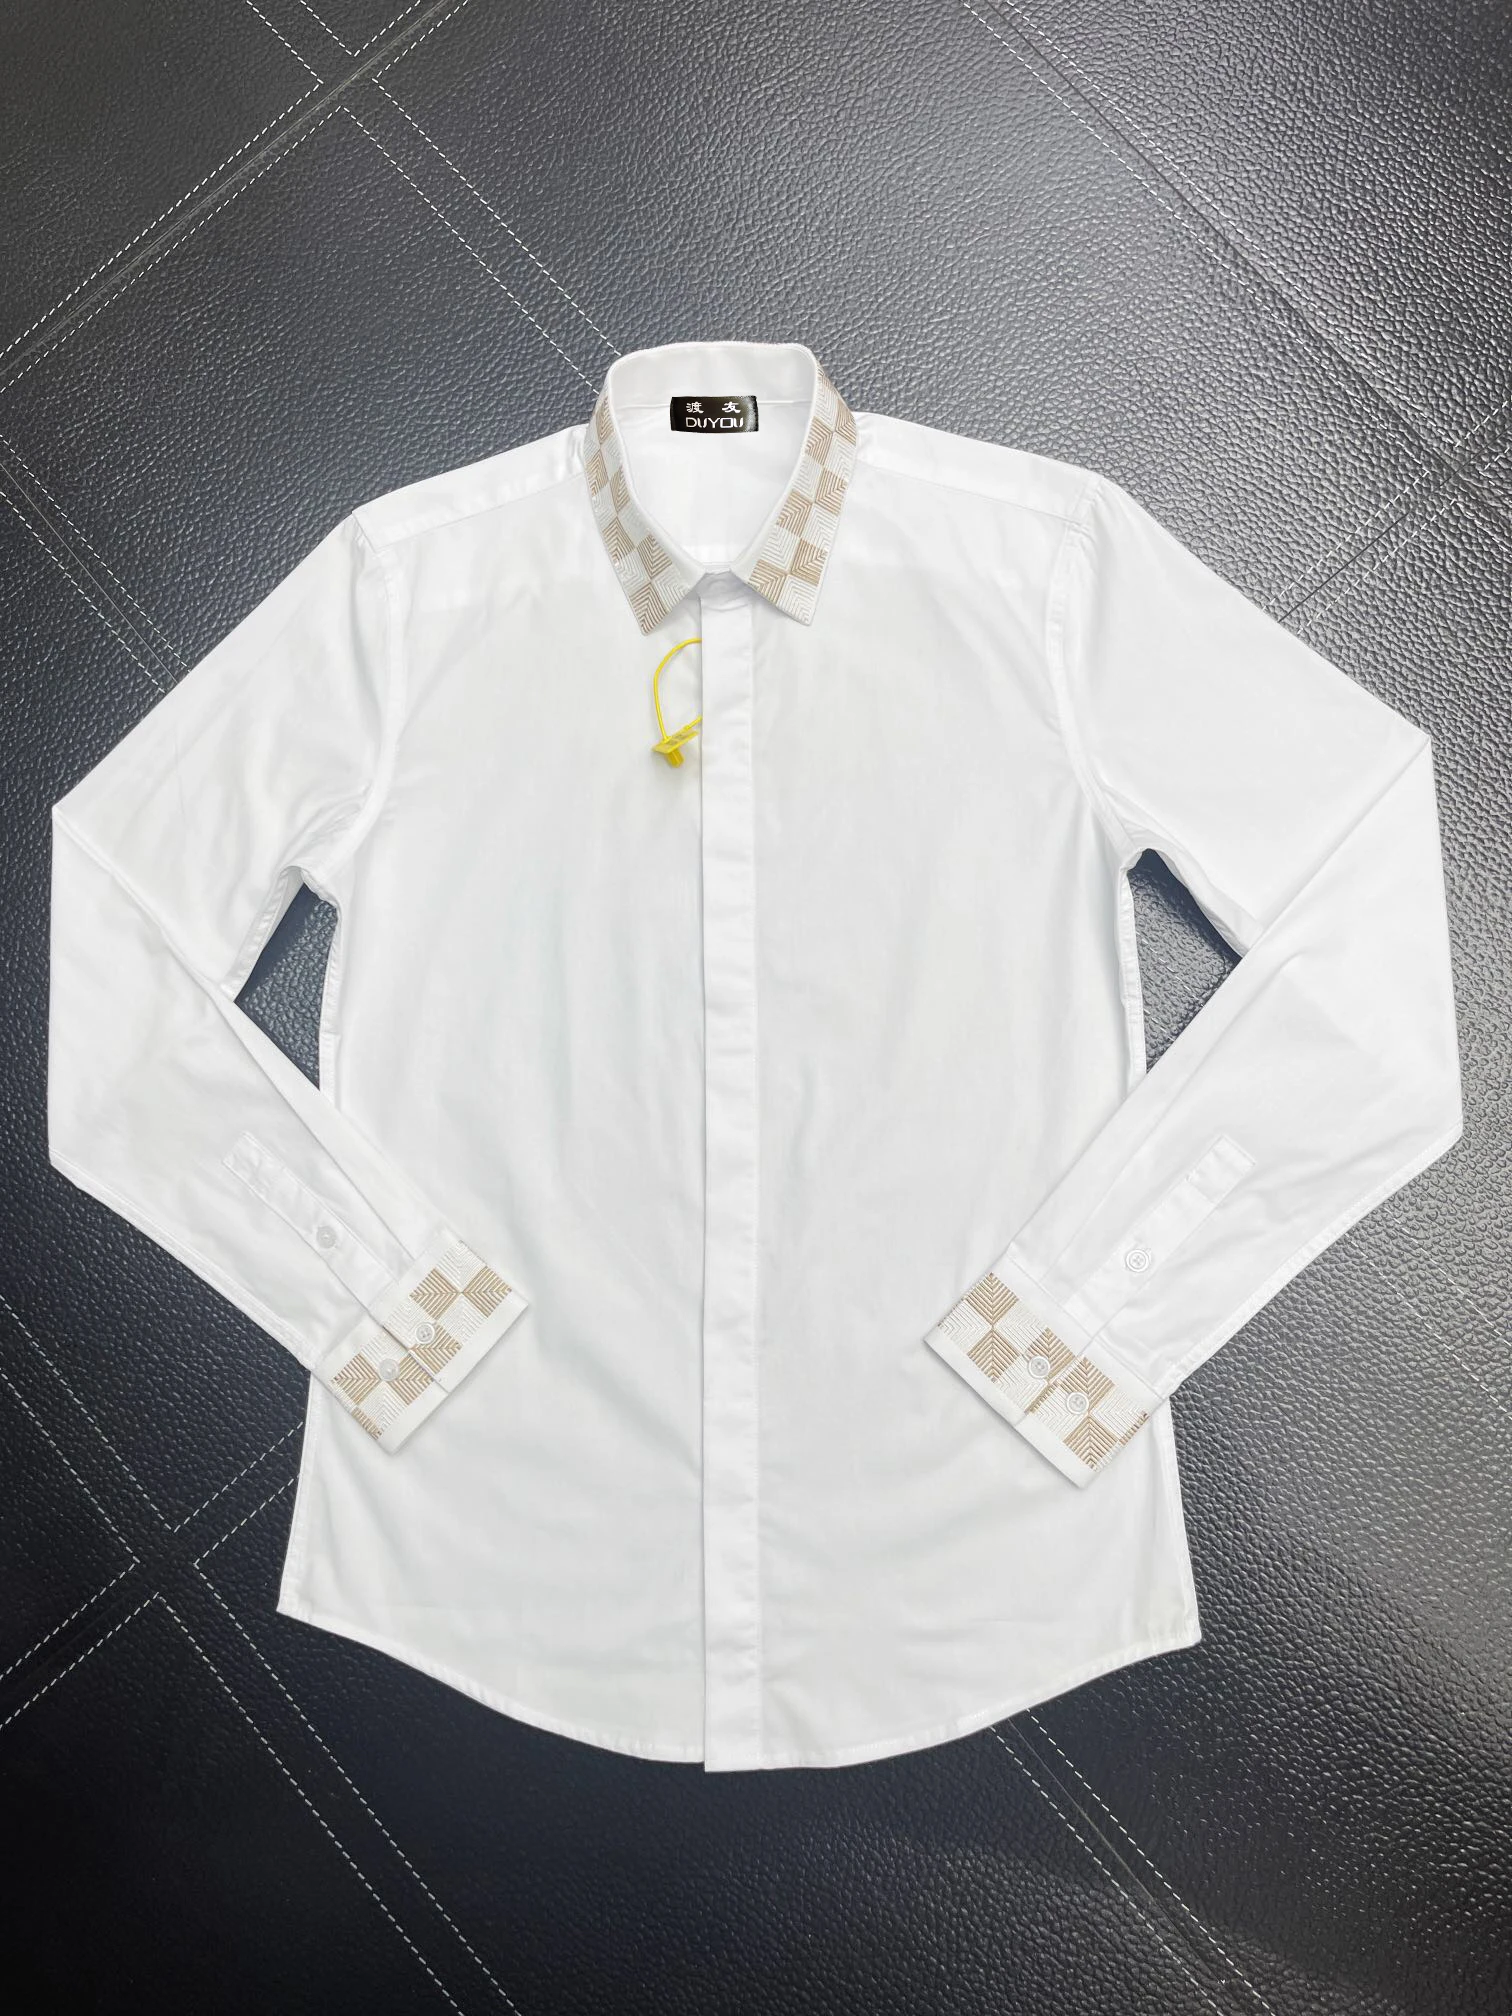 Herrklänningskjortor Bomull broderad geometrisk mönster långärmad kamisor maskulina casual smal fit mens affärsskjorta 191653